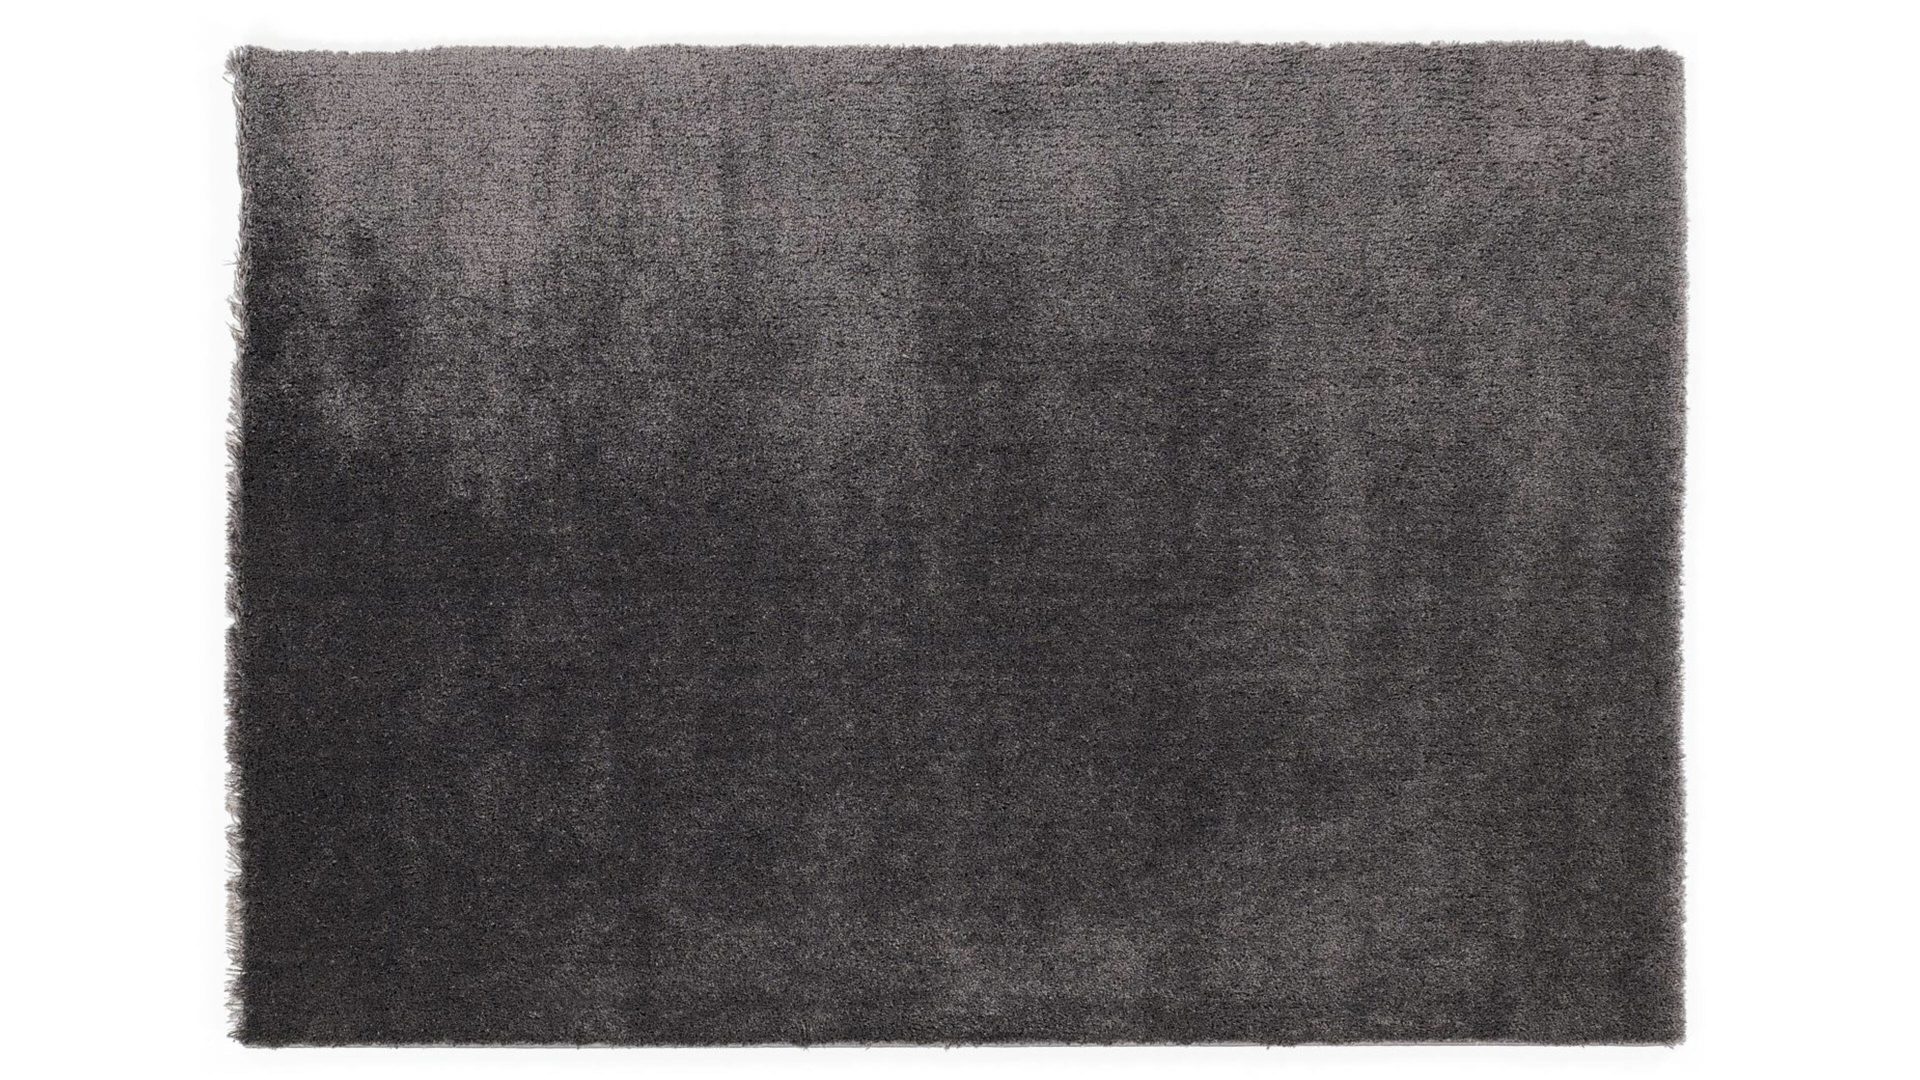 Shaggyteppich Oci aus Kunstfaser in Schwarz Shaggyteppich Royal Shaggy für Ihre Wohnaccessoires quarzfarbene Kunstfaser – ca. 120 x 170 cm